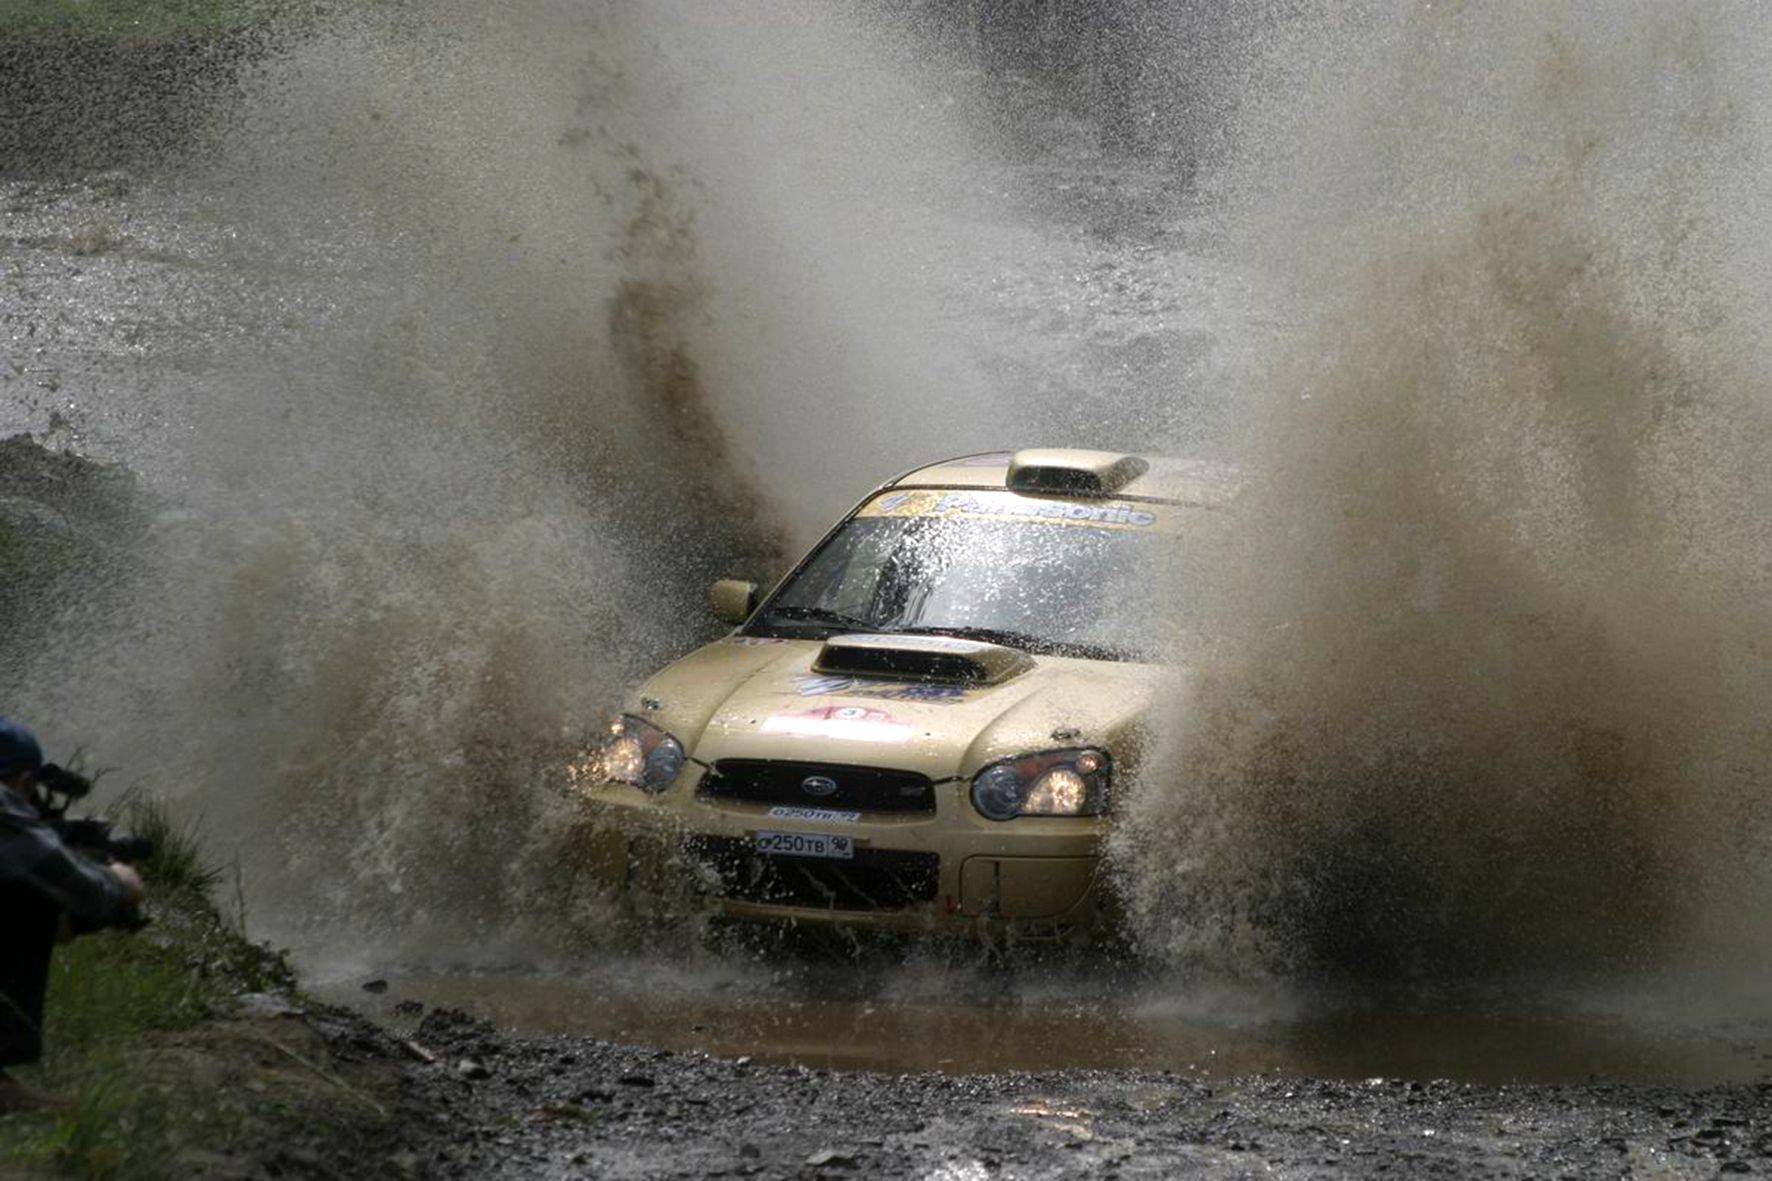 20 лет Subaru в России